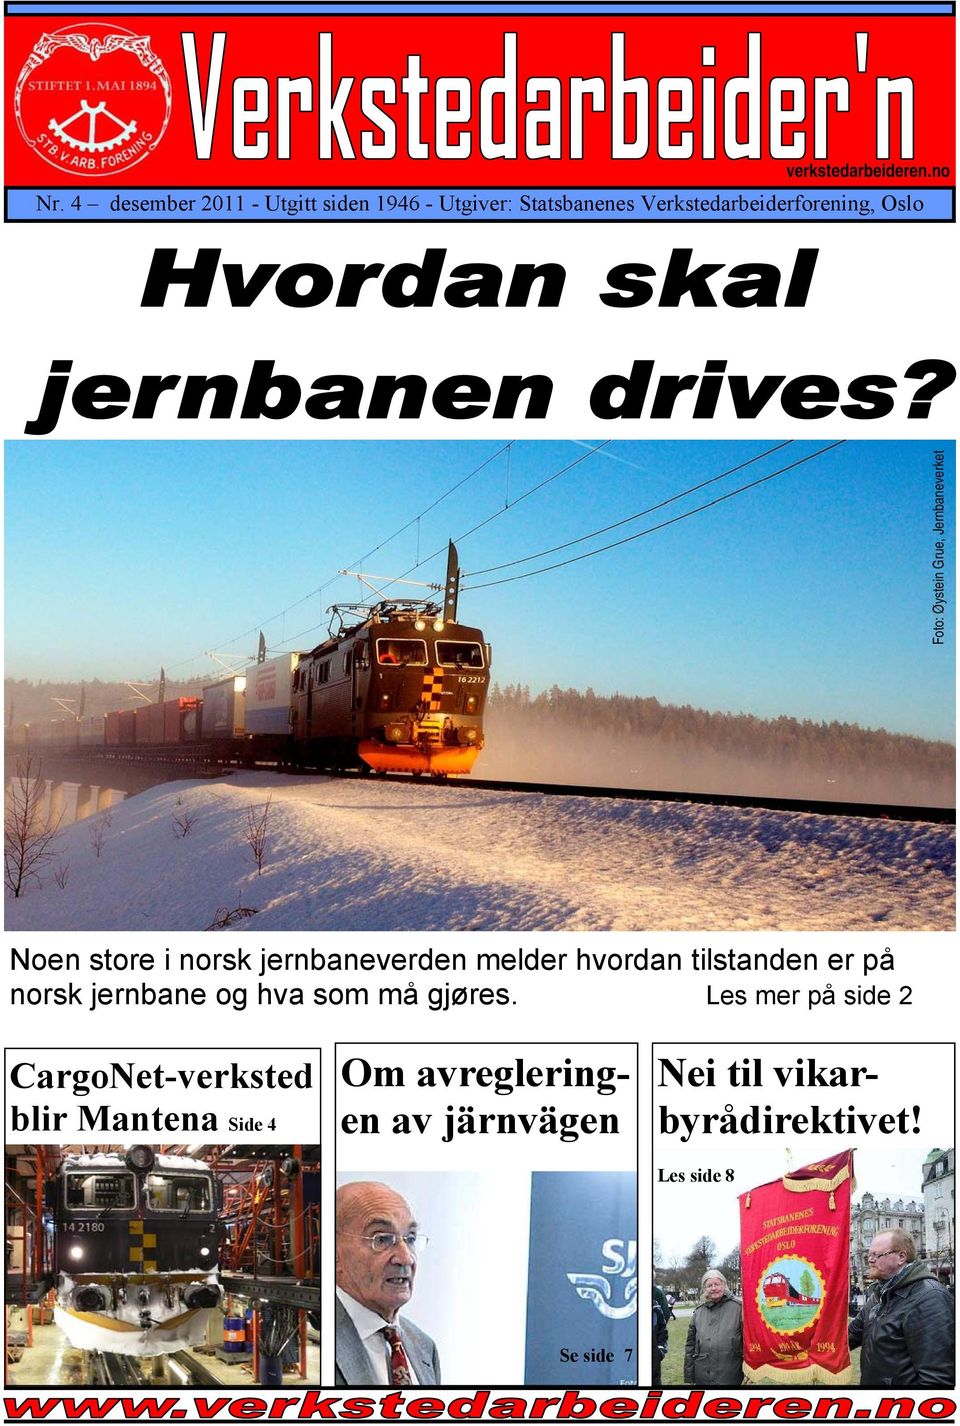 Øystein Grue, Jernbaneverket Noen store i norsk jernbaneverden melder hvordan tilstanden er på